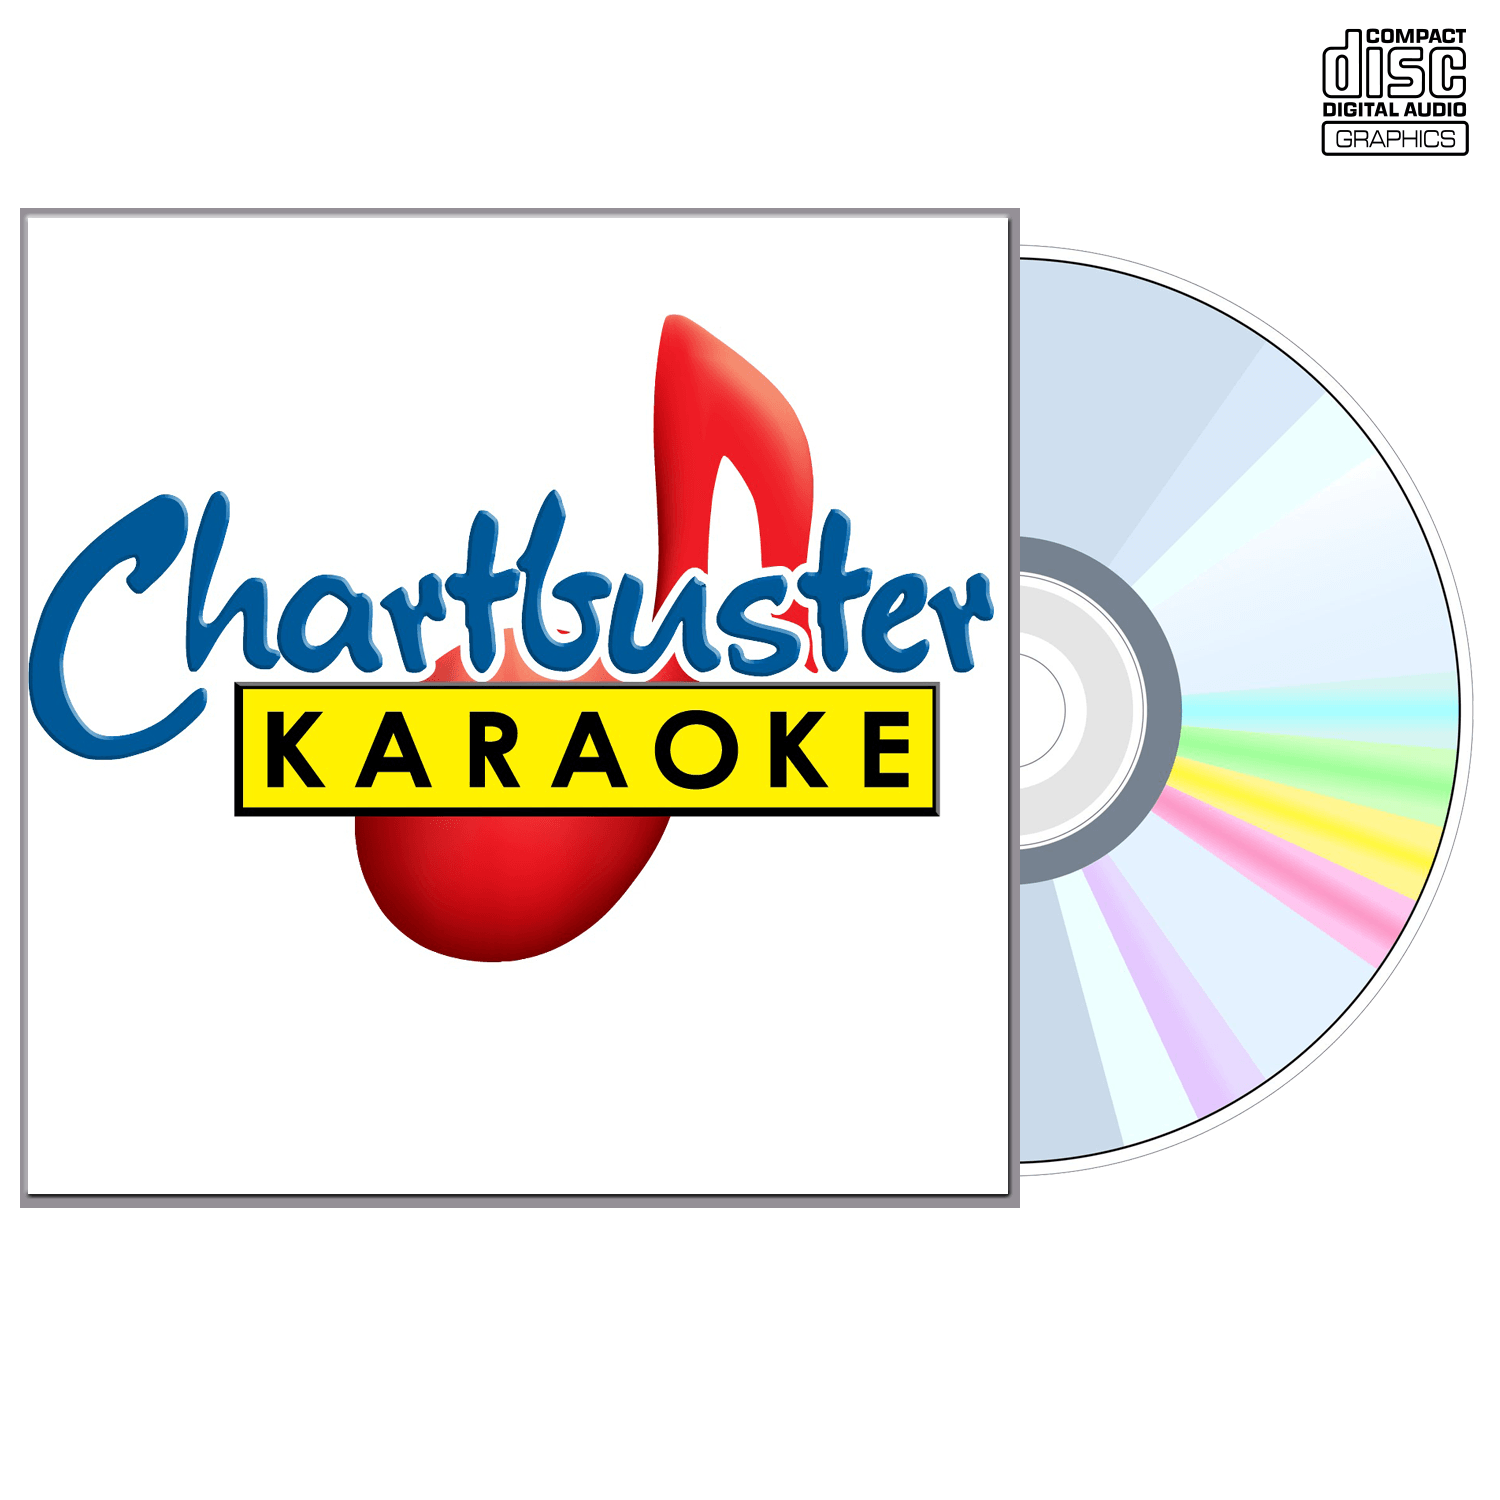 Dusty Drake - CD+G - Chartbuster Karaoke - Karaoke Home Entertainment